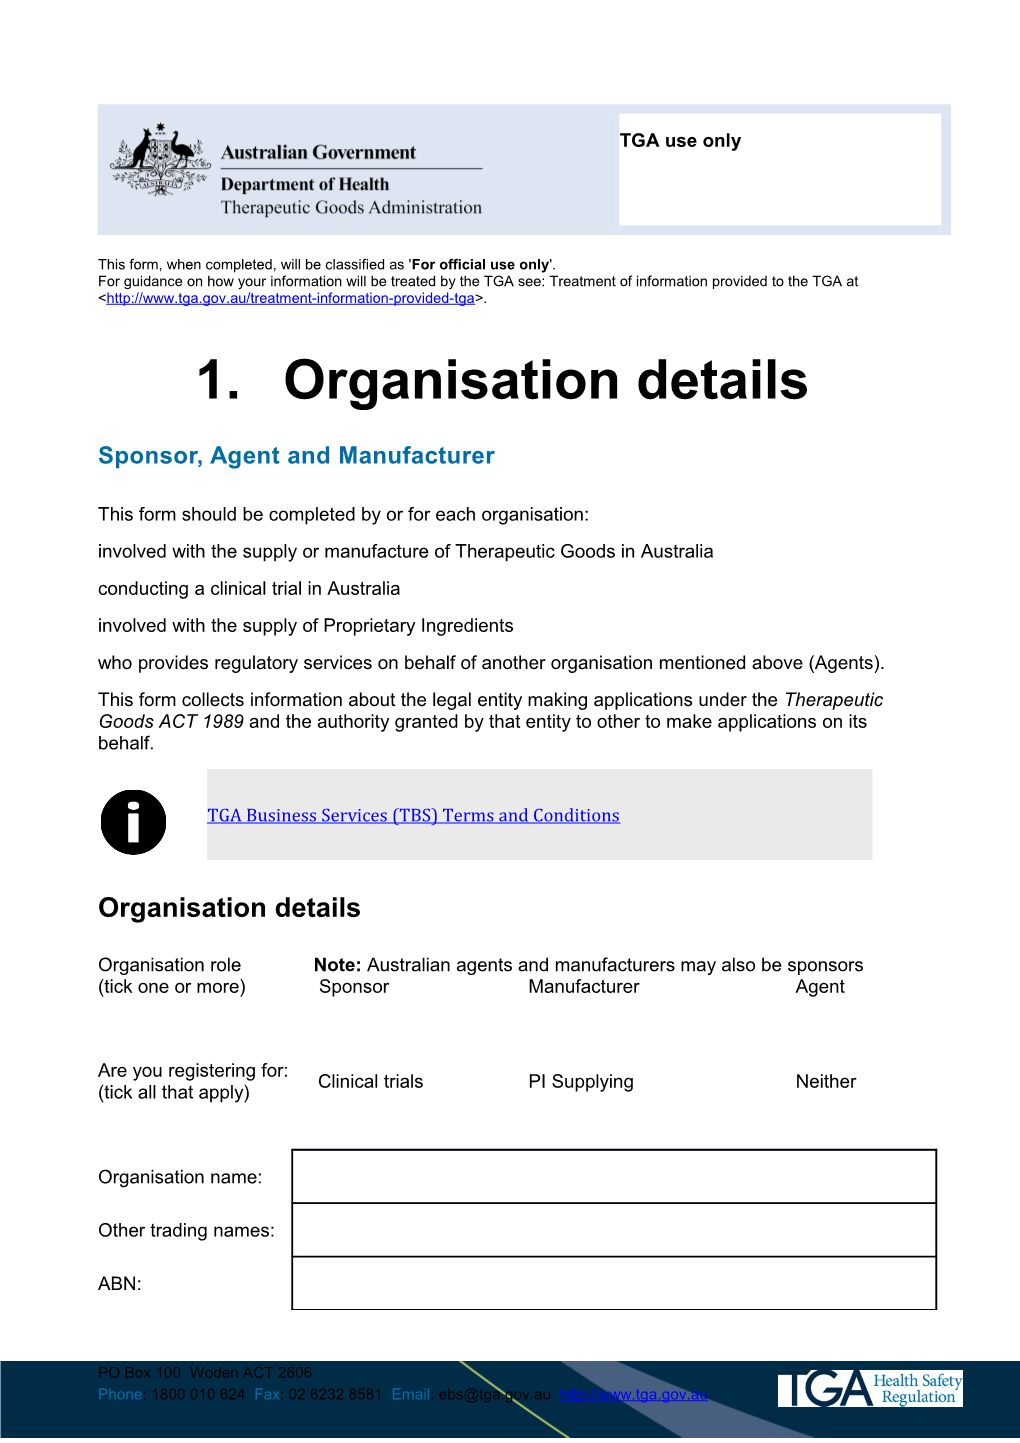 Organisation Details - Sponsor, Agent and Manufacturer